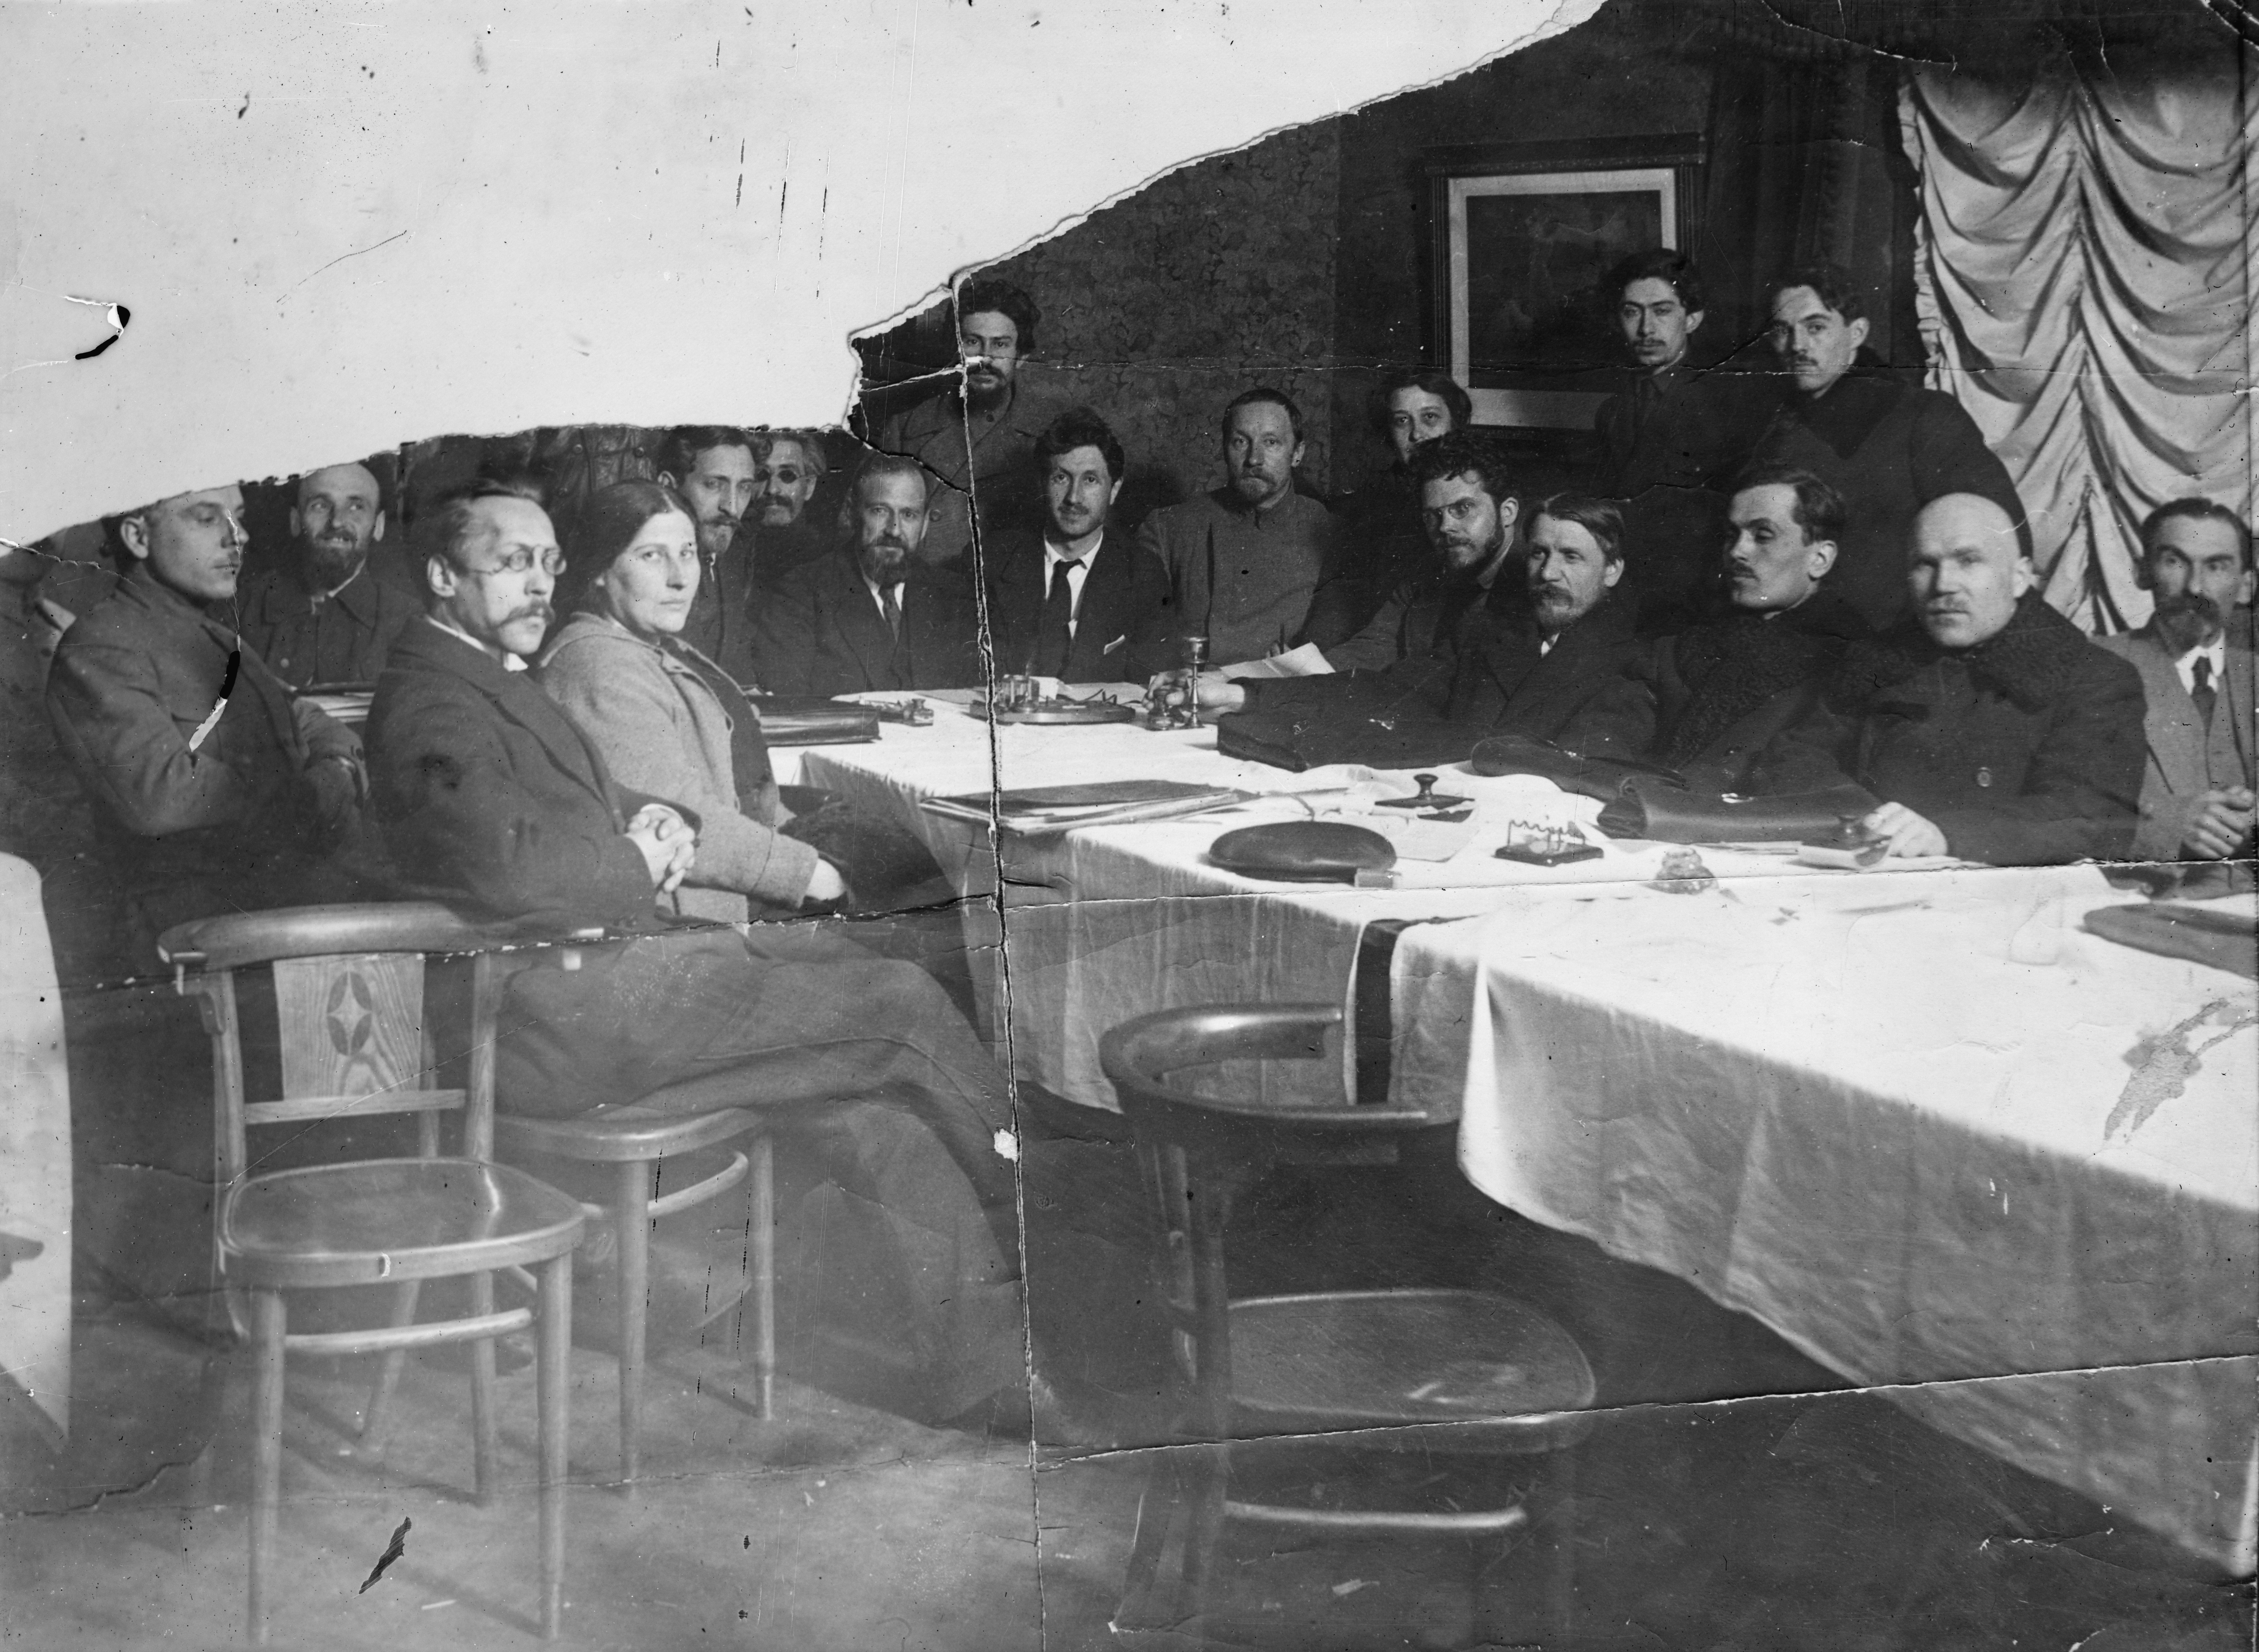 Bolshevik commissars in Kharkov, Ukraine some time in 1918 or 1919.